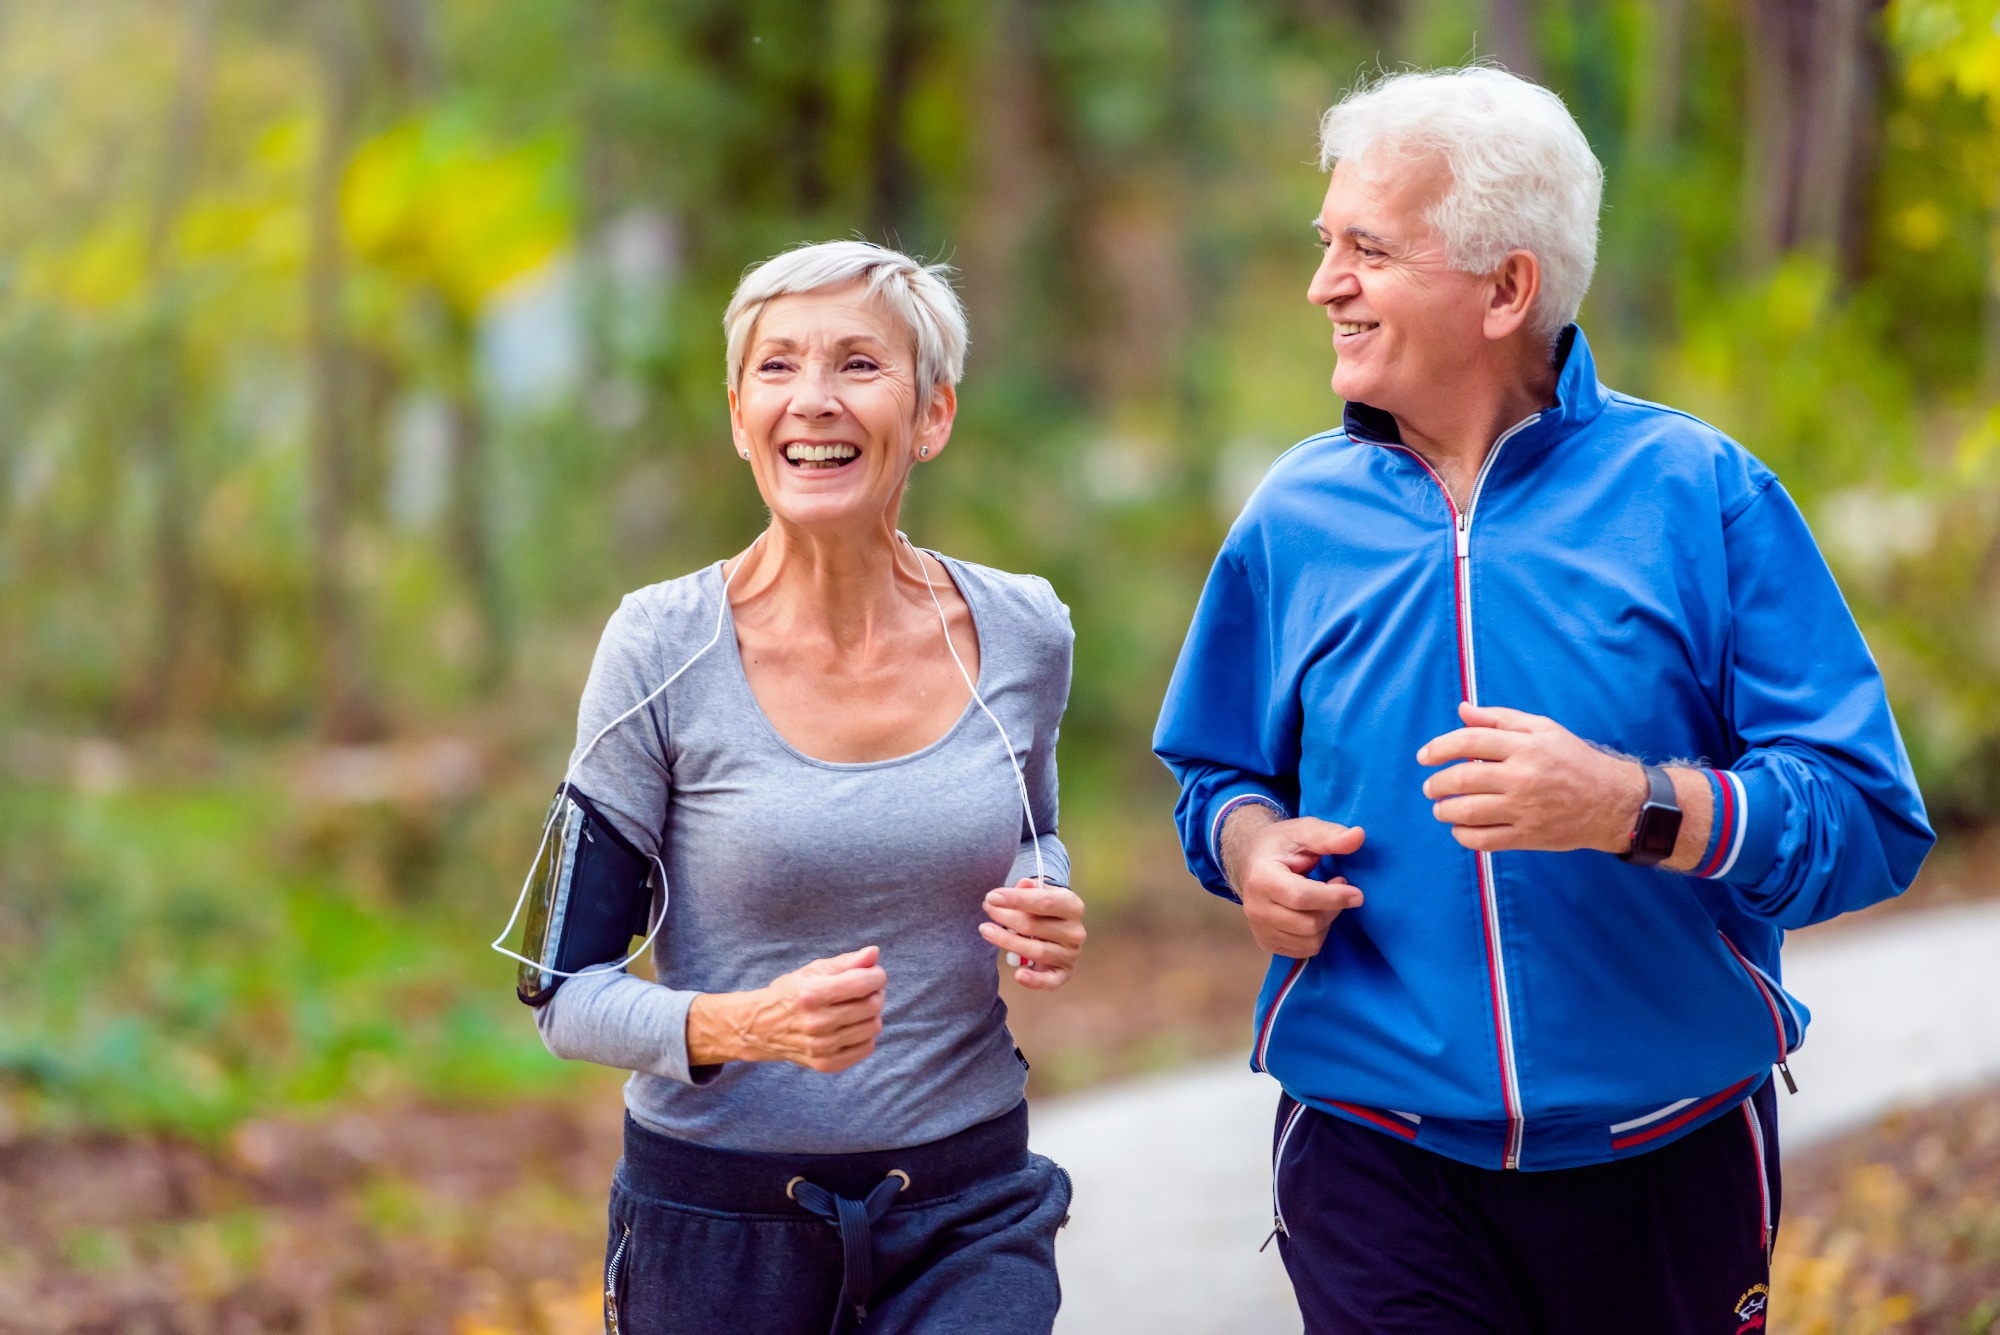 Nghiên cứu mới chỉ ra thời điểm tập thể dục có lợi cho đường huyết  - Ảnh 1.